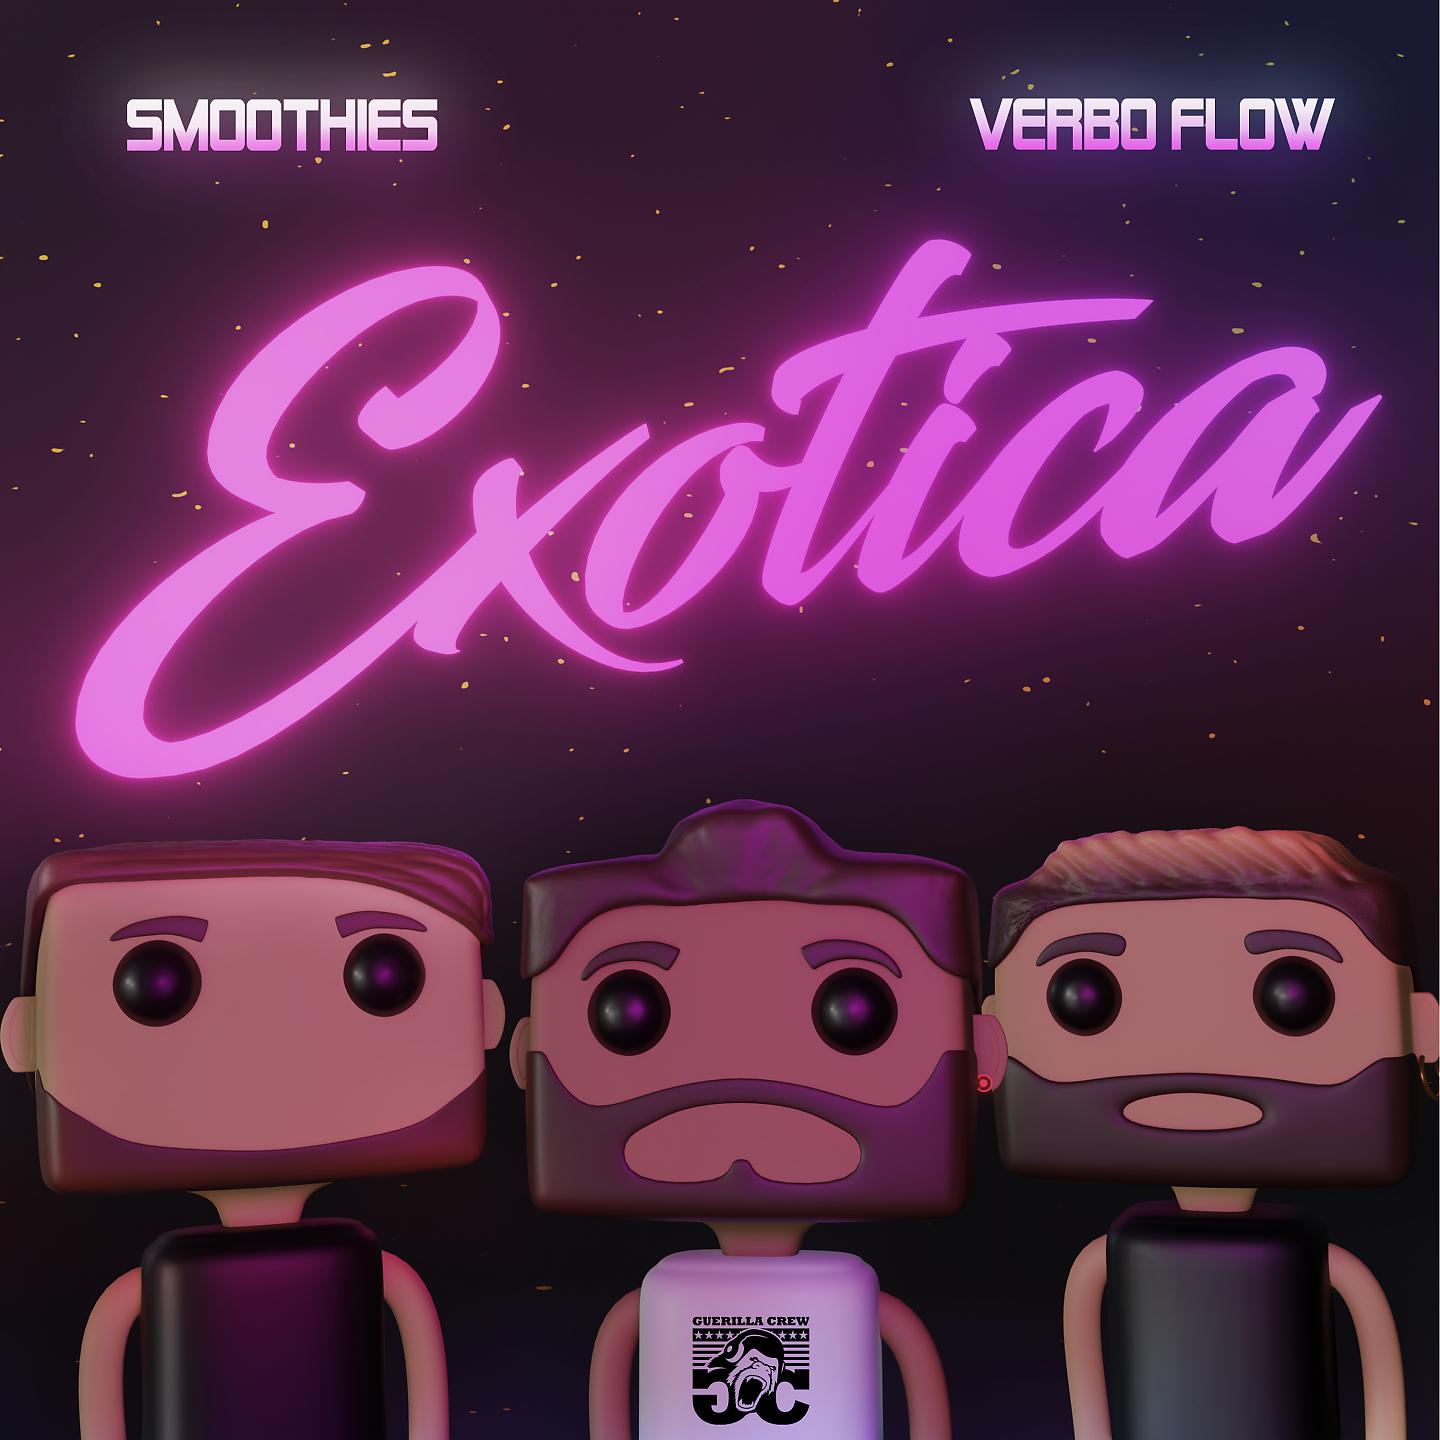 Постер альбома Exotica